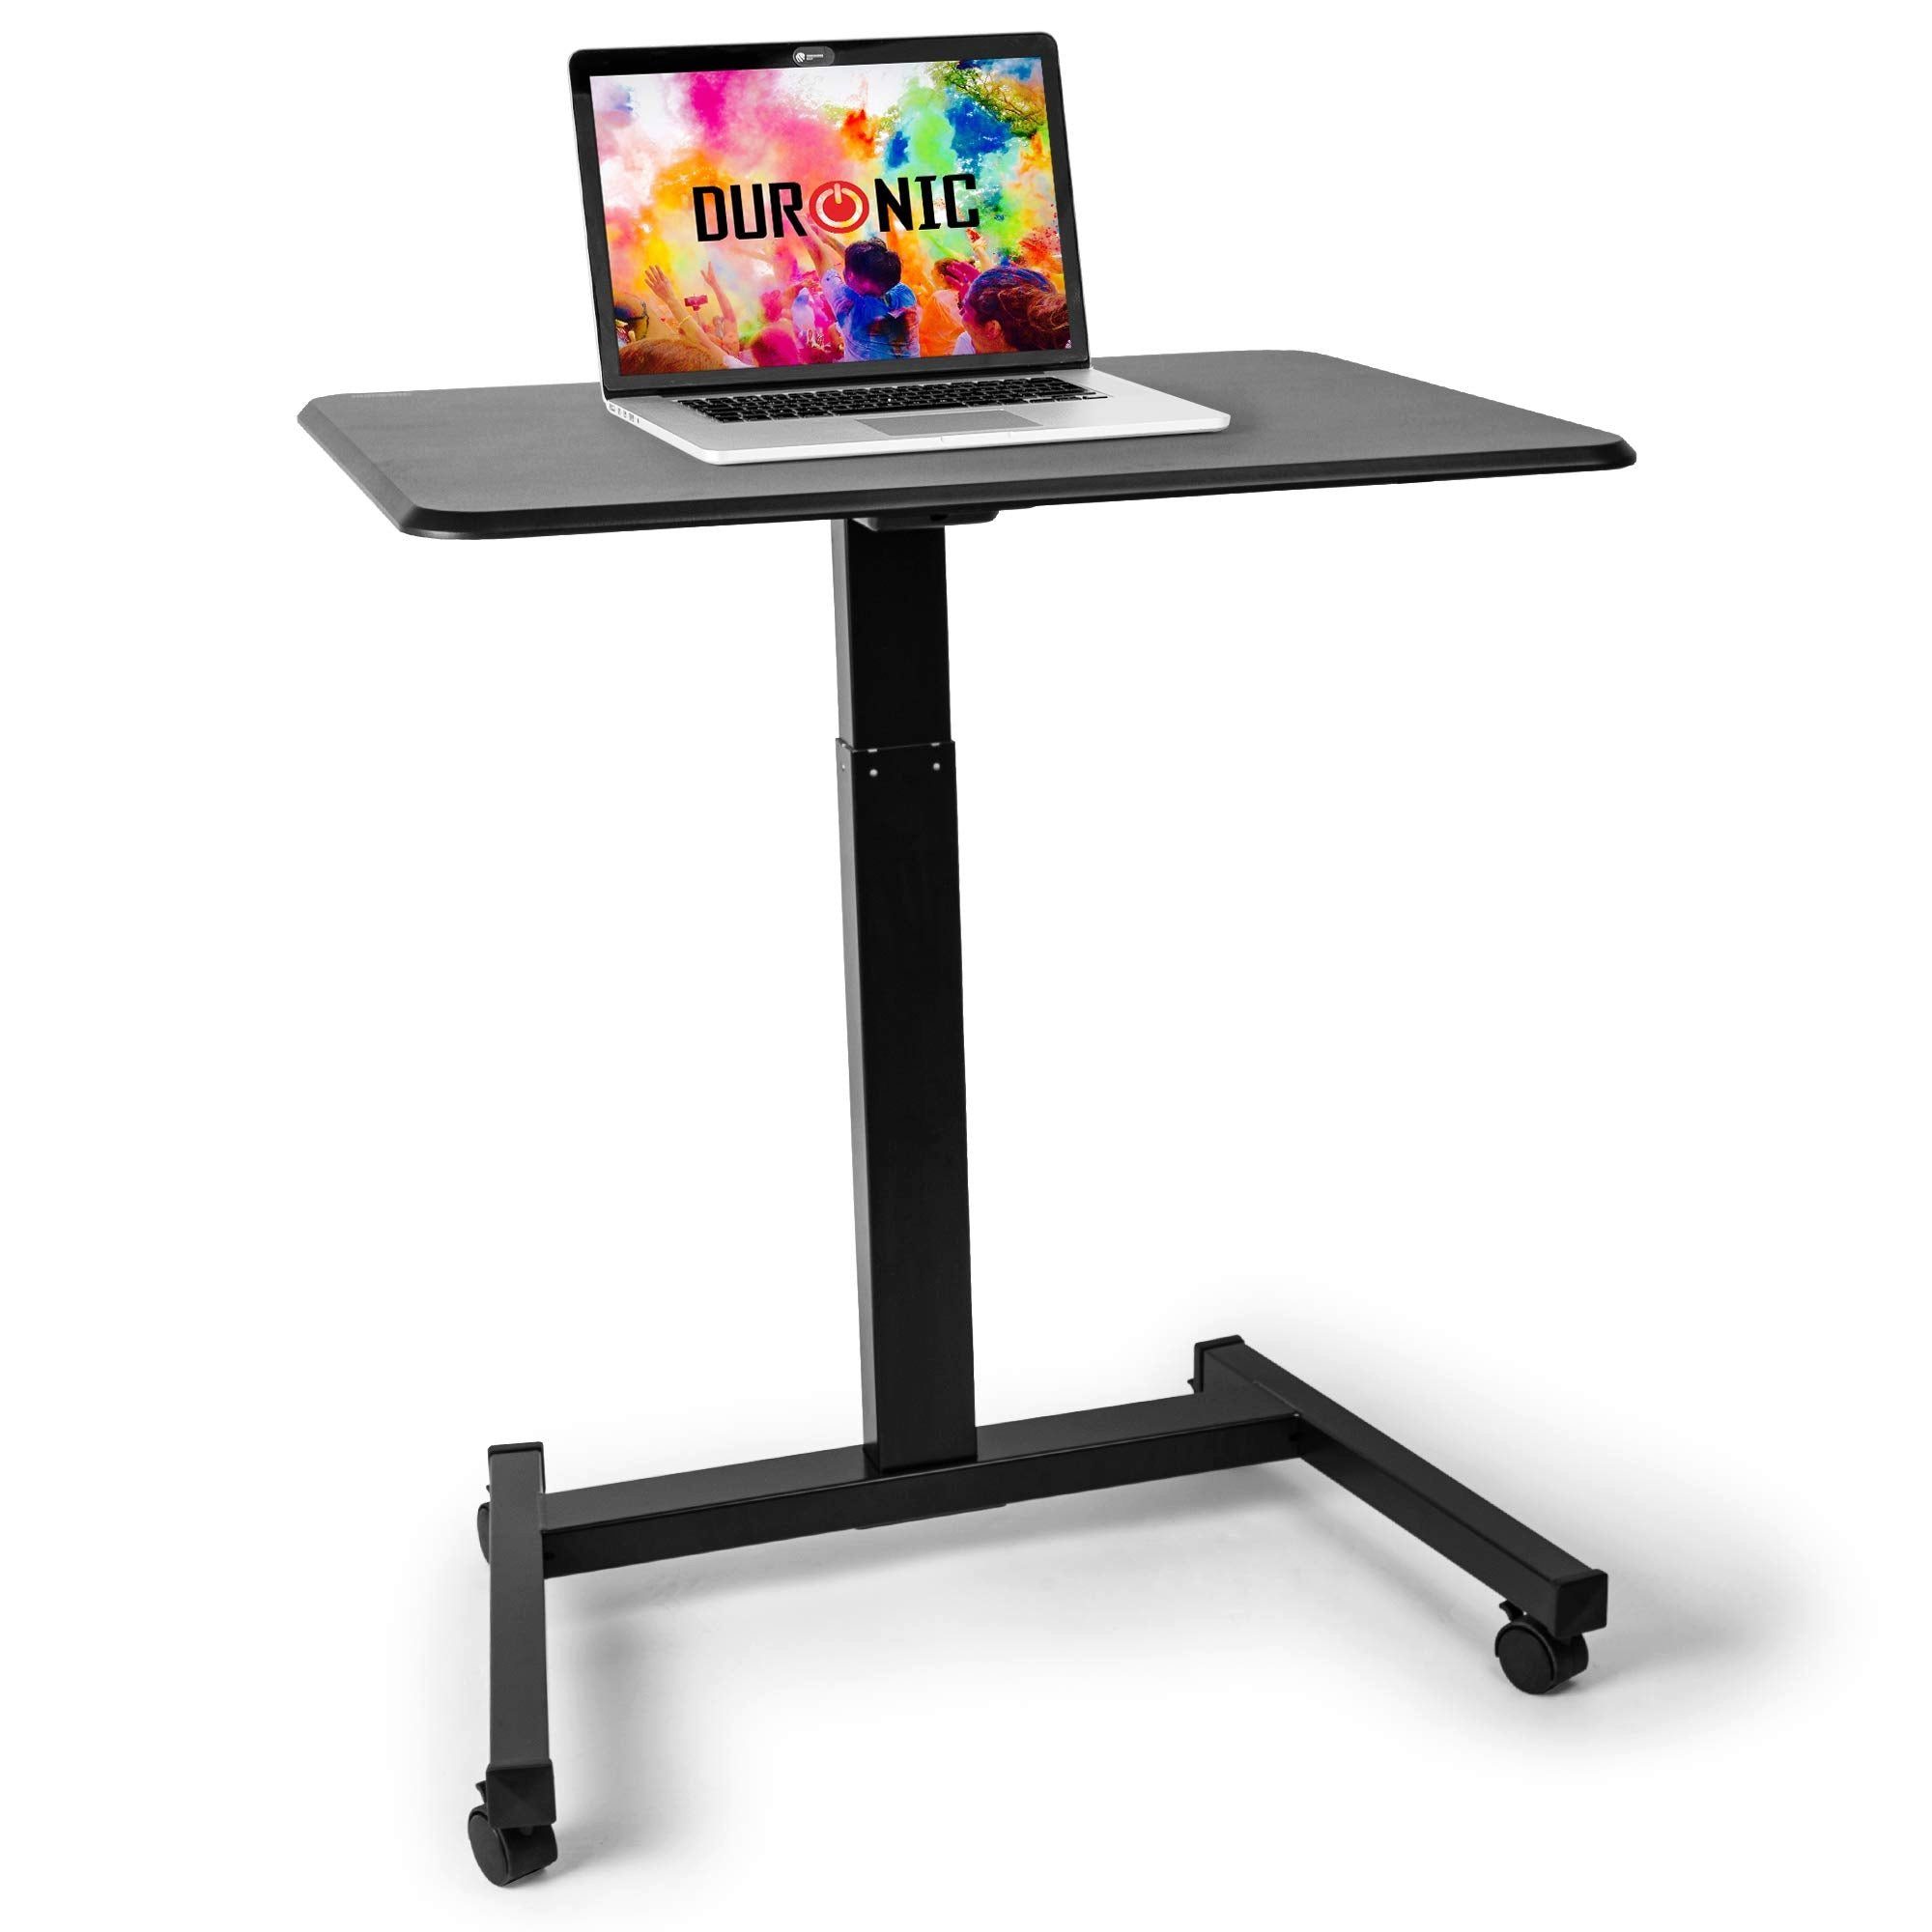 Duronic Laptoptisch, WPS47 Arbeitstisch, Laptoptisch 80 x 50 cm bis 30 kg,  Computertisch mit Rollen, Höhenverstellbarer Projektortisch für Beamer,  Sitz-Stehtisch Schreibtisch Rolltisch Beistelltisch Sofatisch